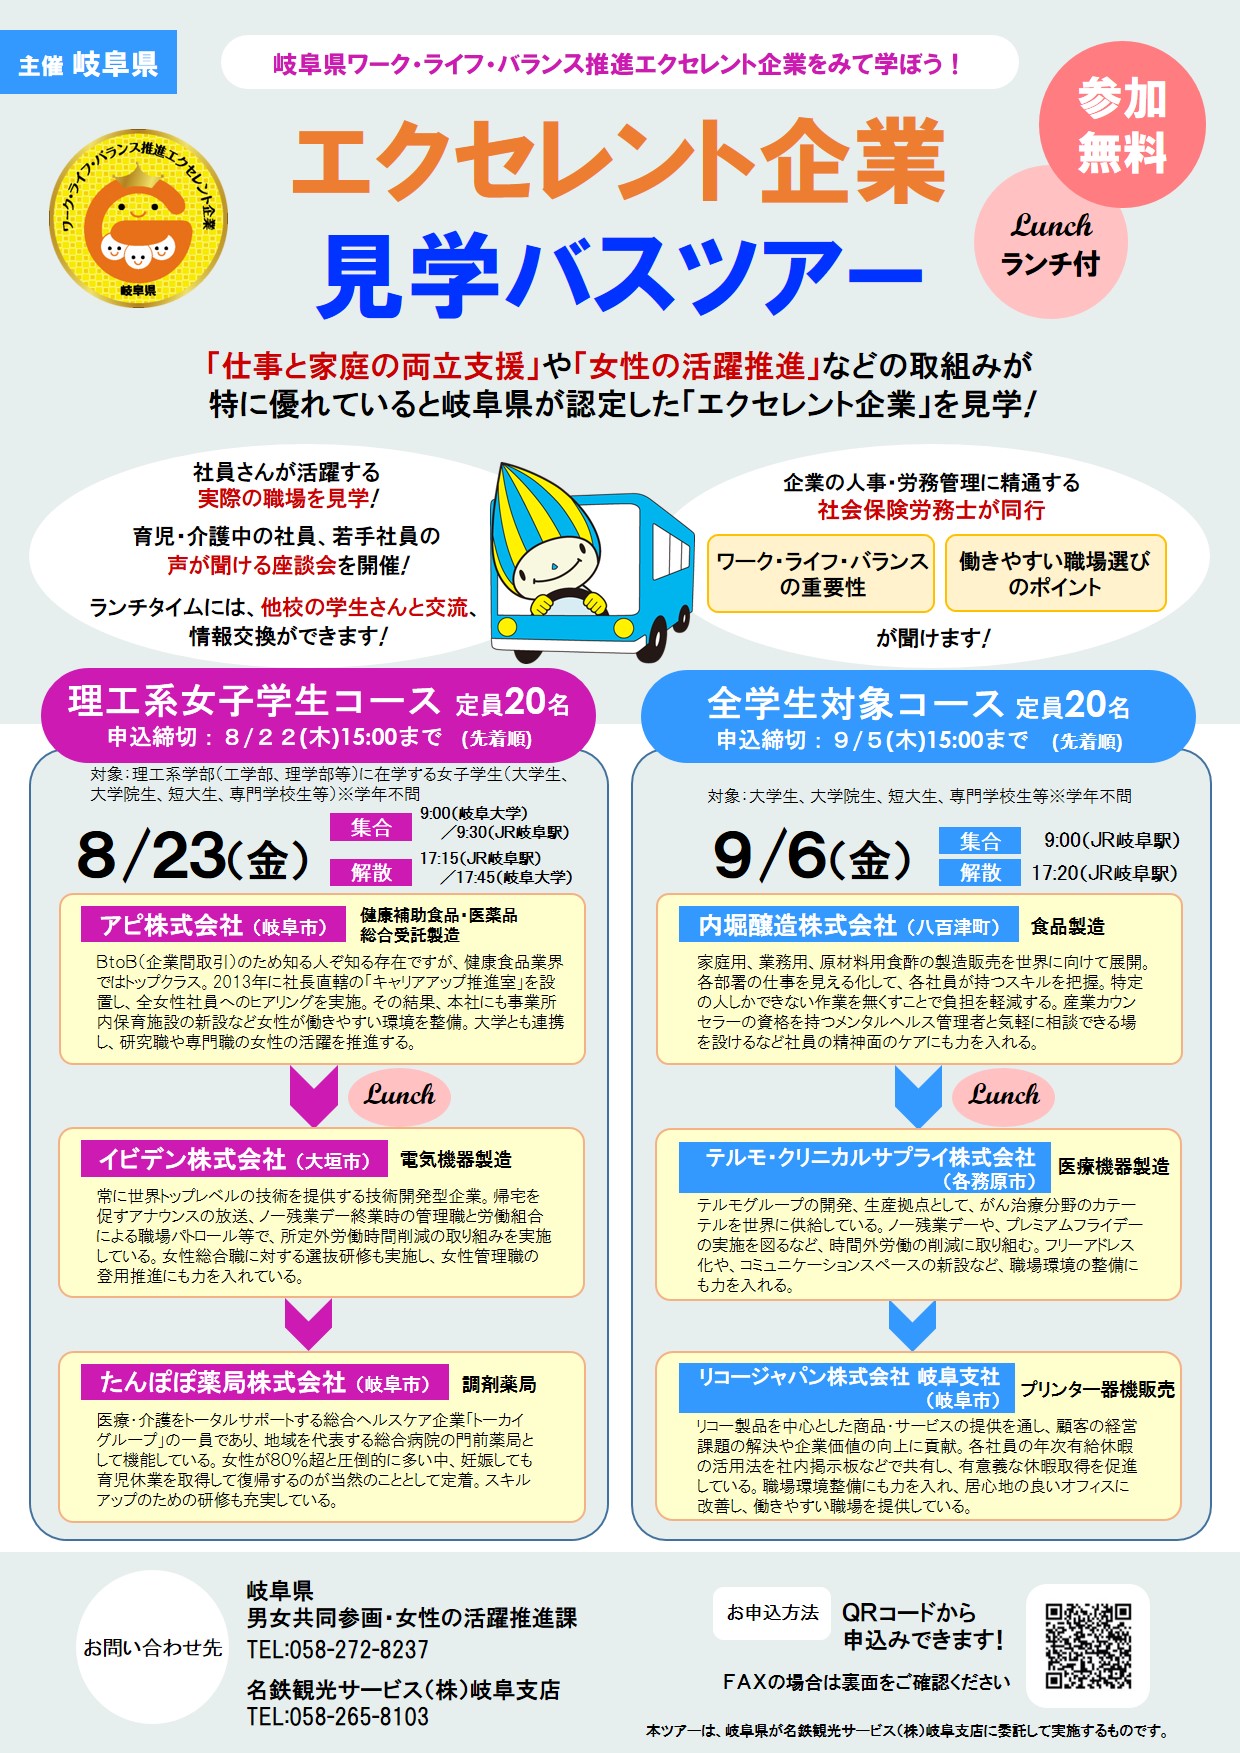 エクセレント企業見学バスツアー【2019.8.23】【2019.9.6】